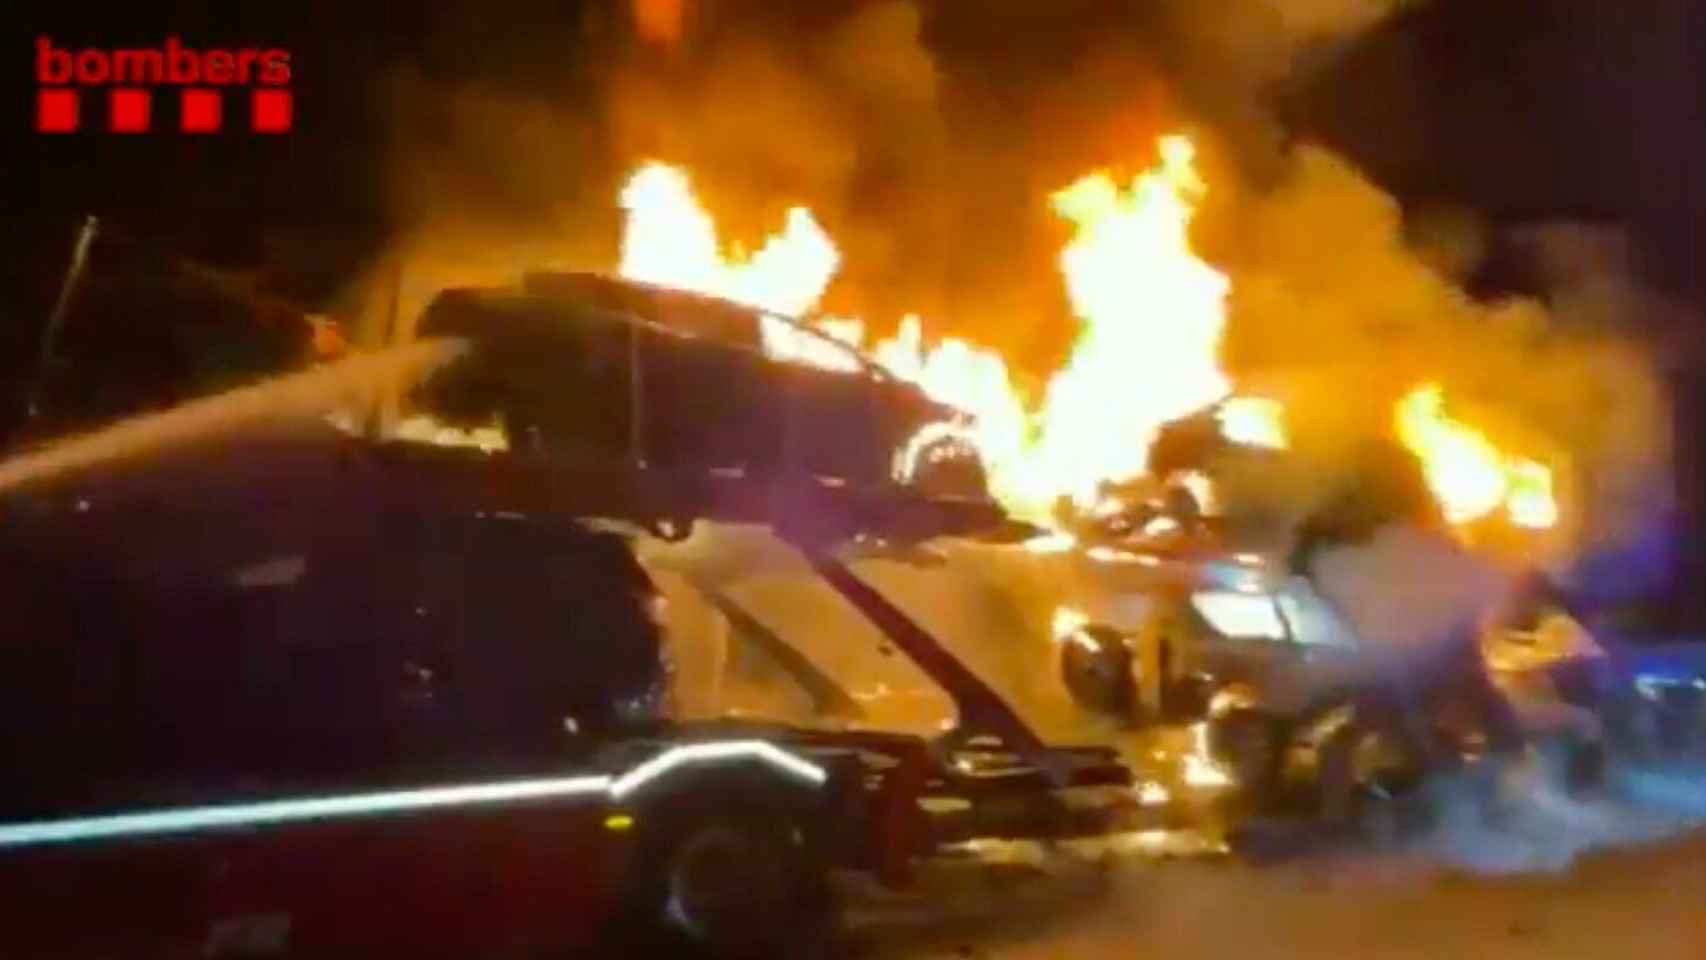 Aparatoso incendio de un camión que transportaba varios coches en la AP-7 / BOMBERS